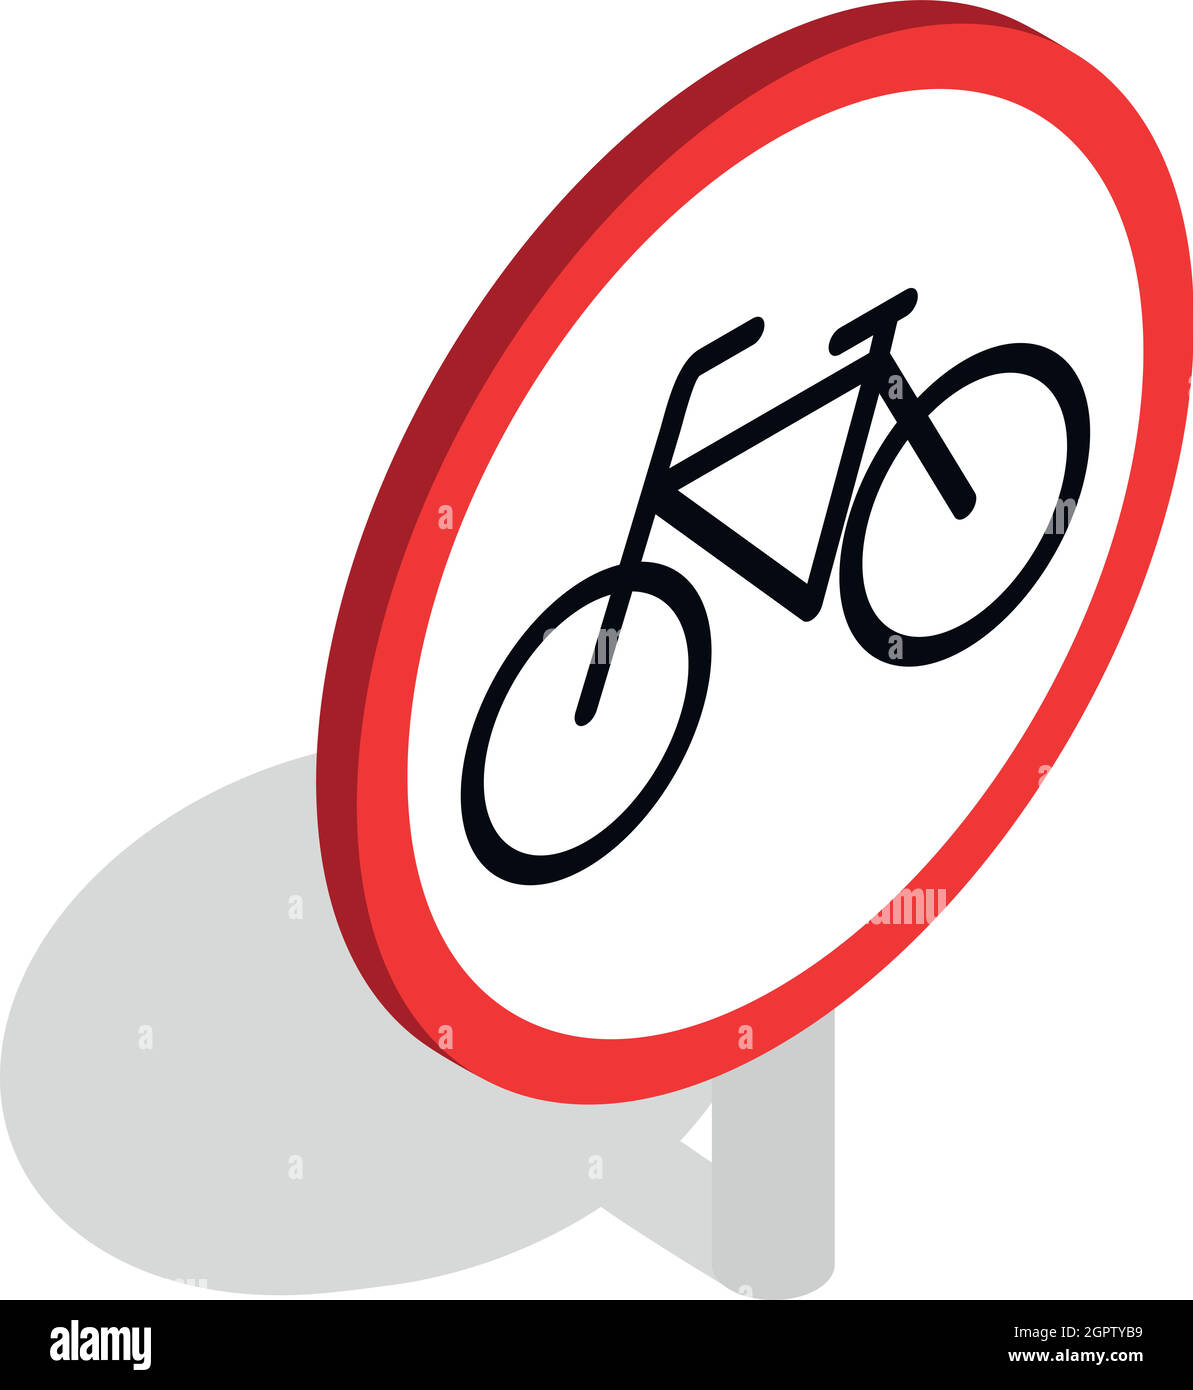 Piso 3d Isométrica De Bicicletas De Alta Calidad Con Remolque Bici Niños.  Piso 3d Ilustración Ilustraciones svg, vectoriales, clip art vectorizado  libre de derechos. Image 61957780